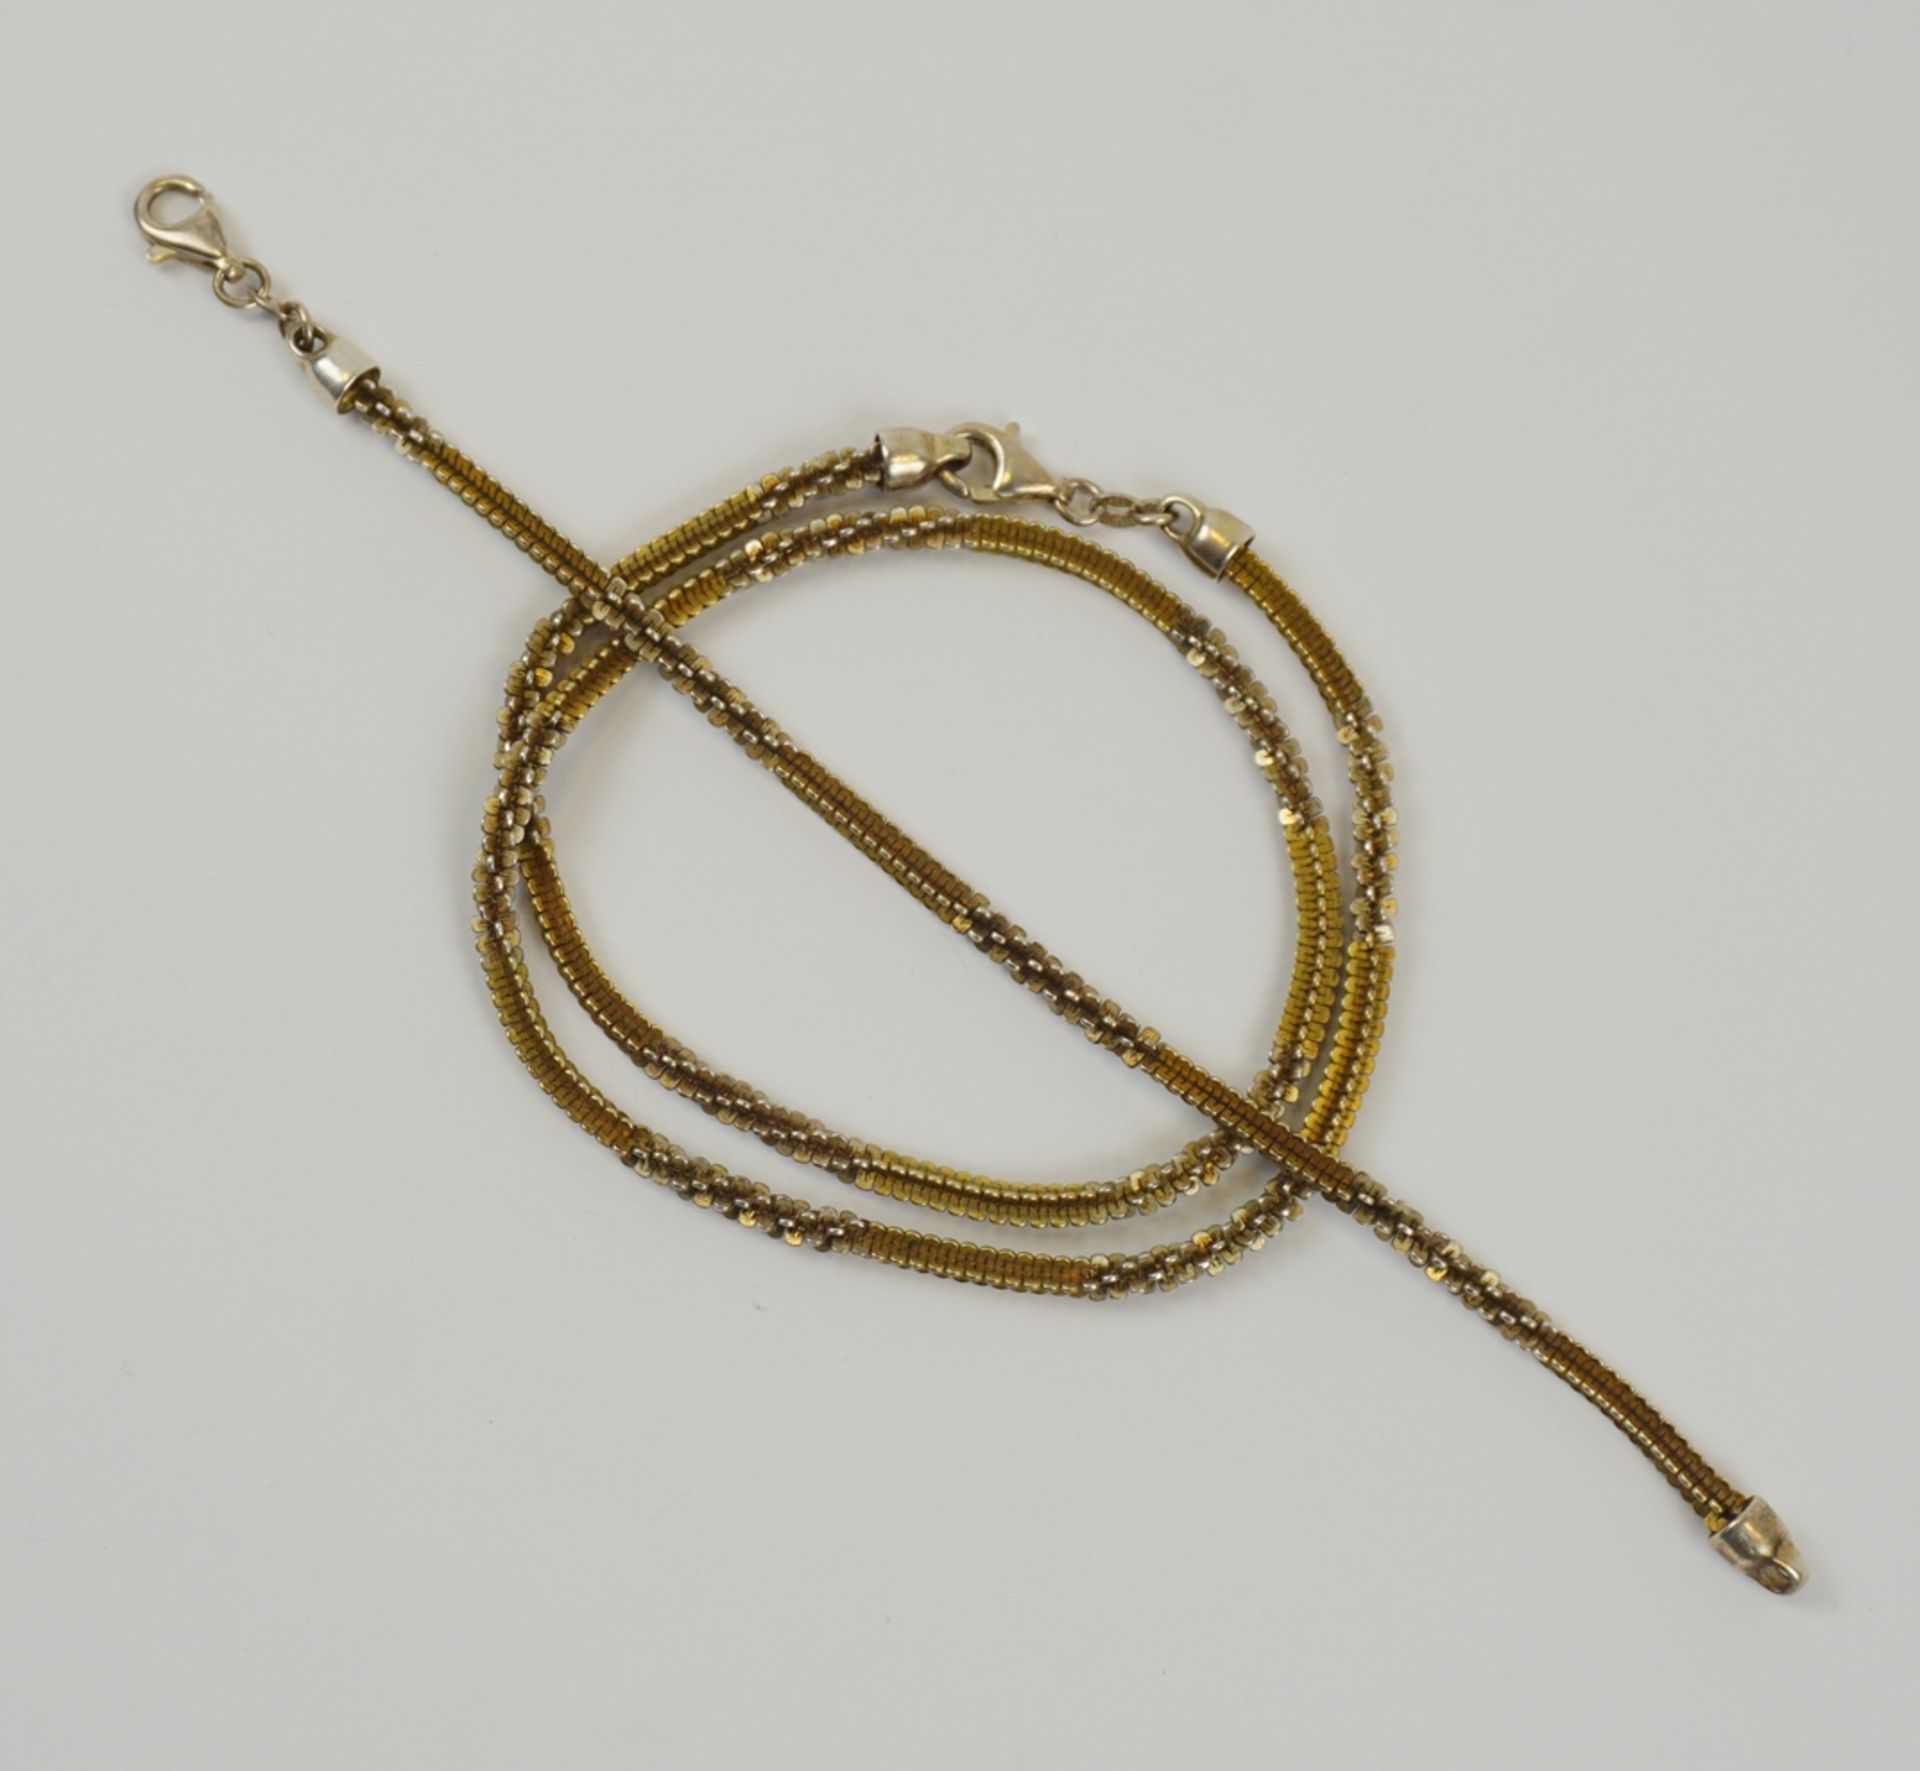 Collier und Armband, kreuzförmige Glieder, 925er Silber, Gew.14,56g